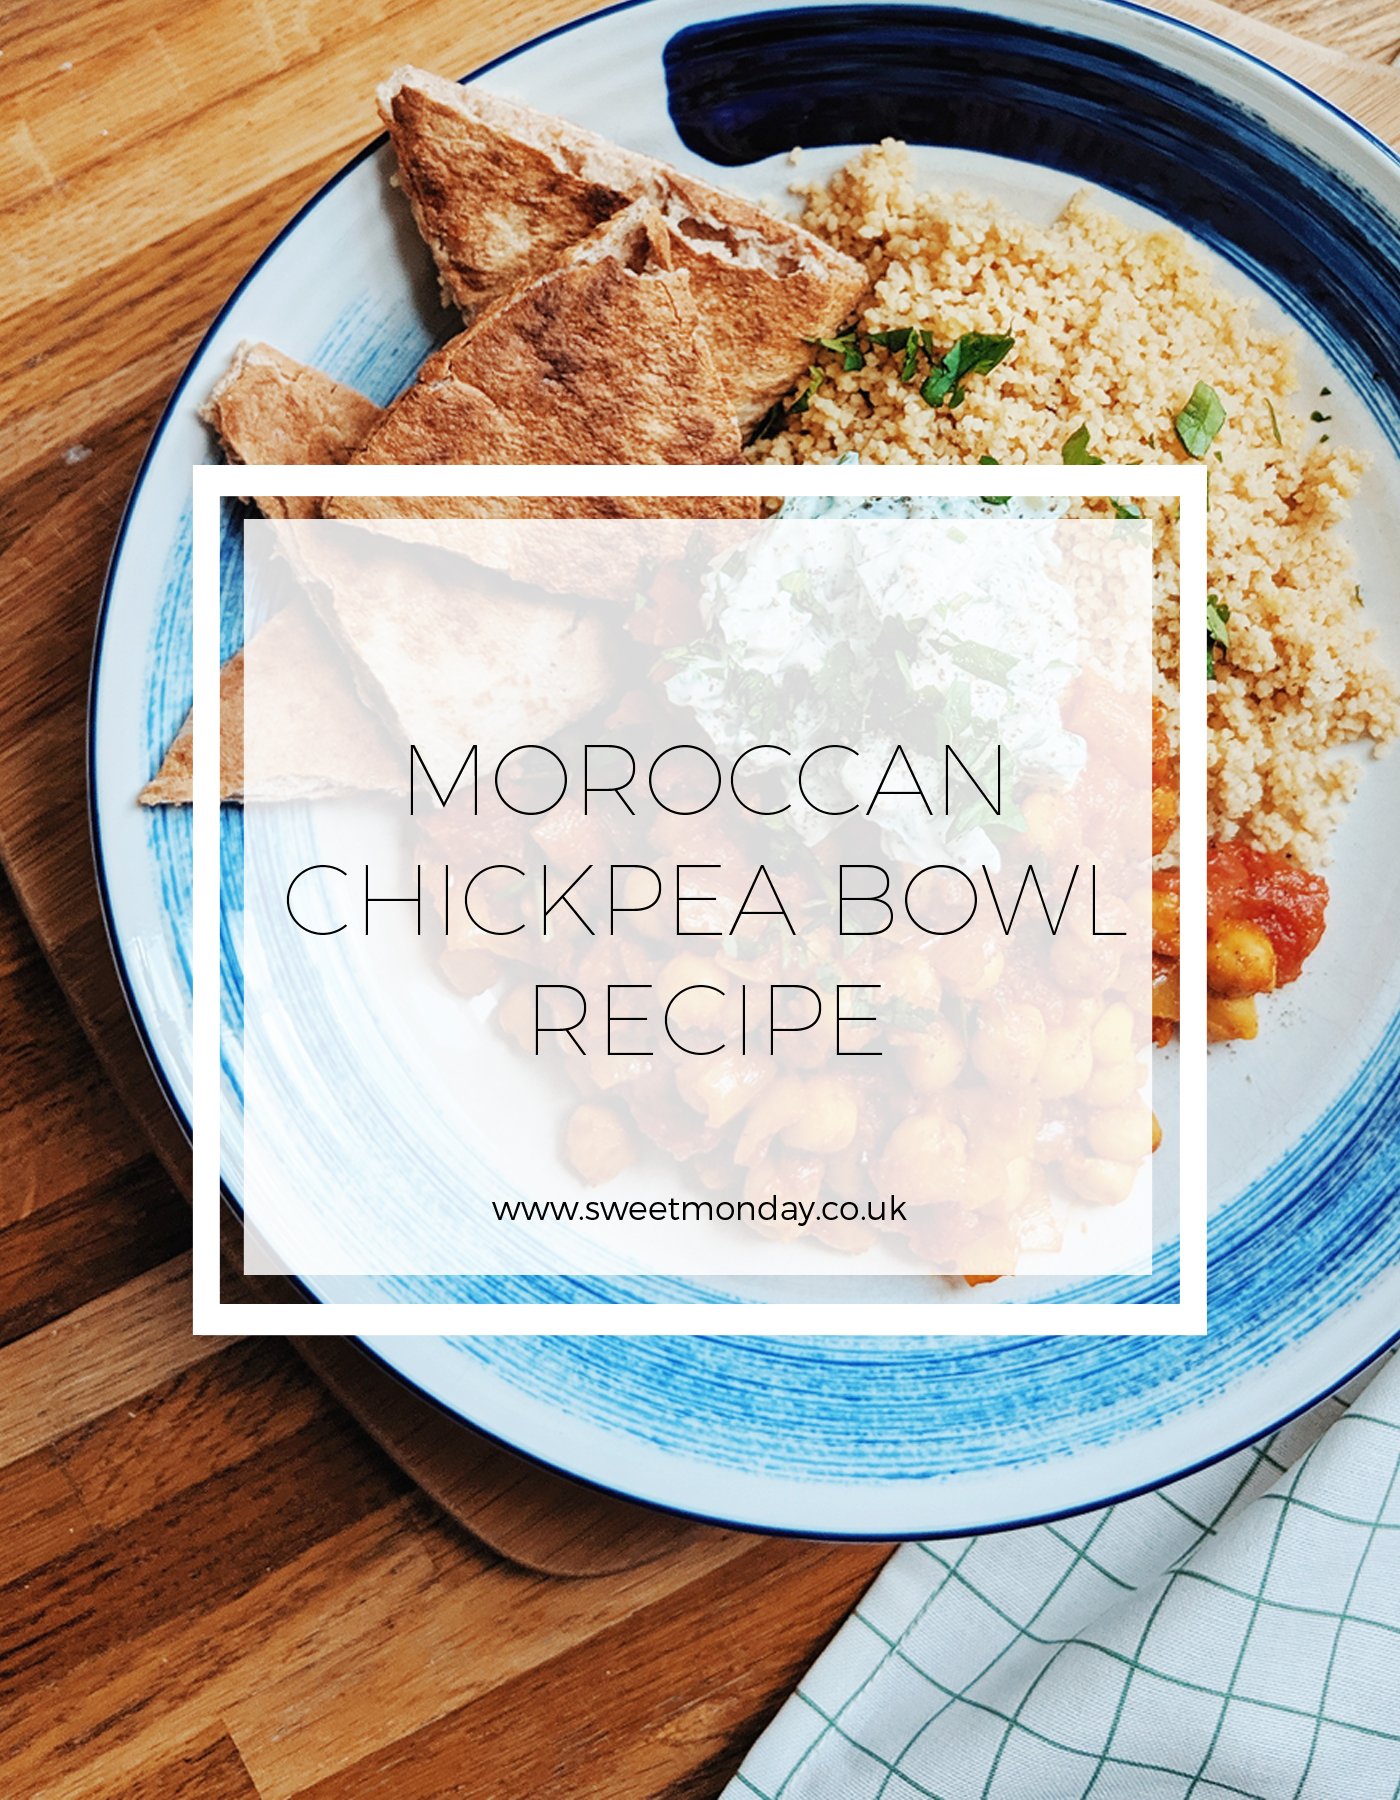 Moroccan Chickpea Bowl Recipe